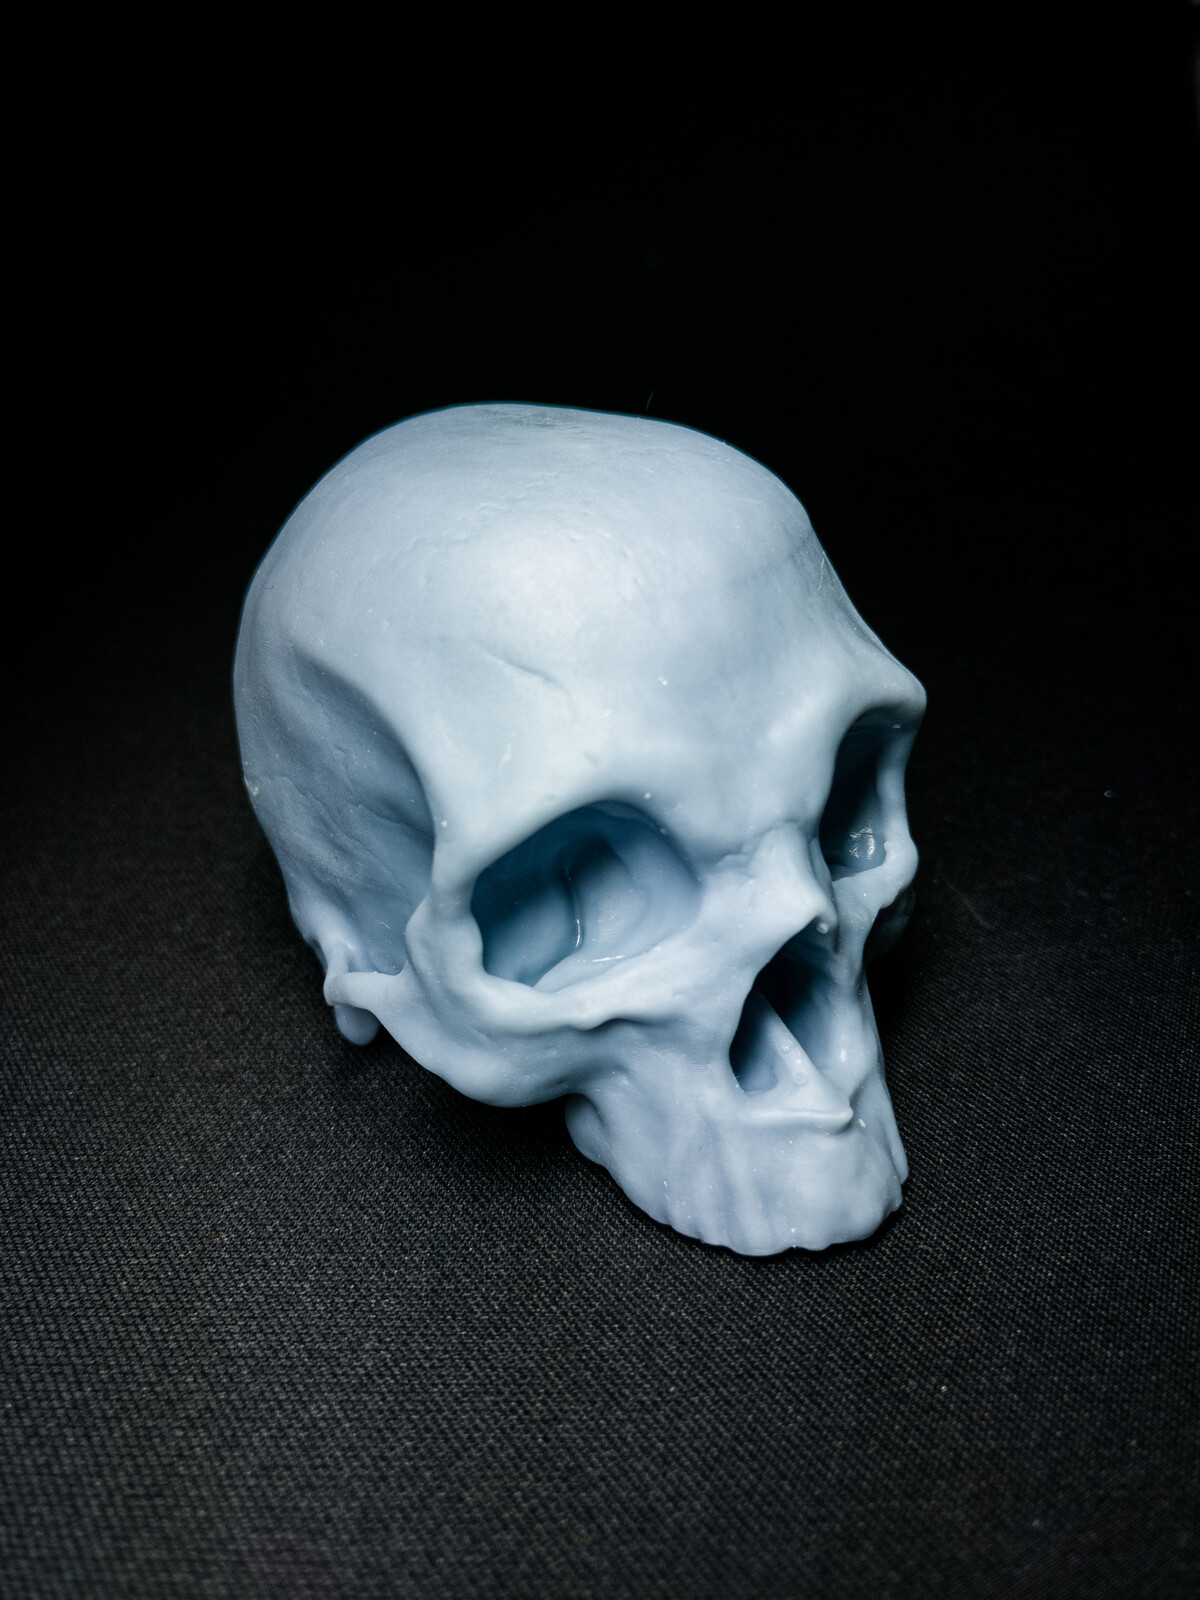 3D printed version [WIP]